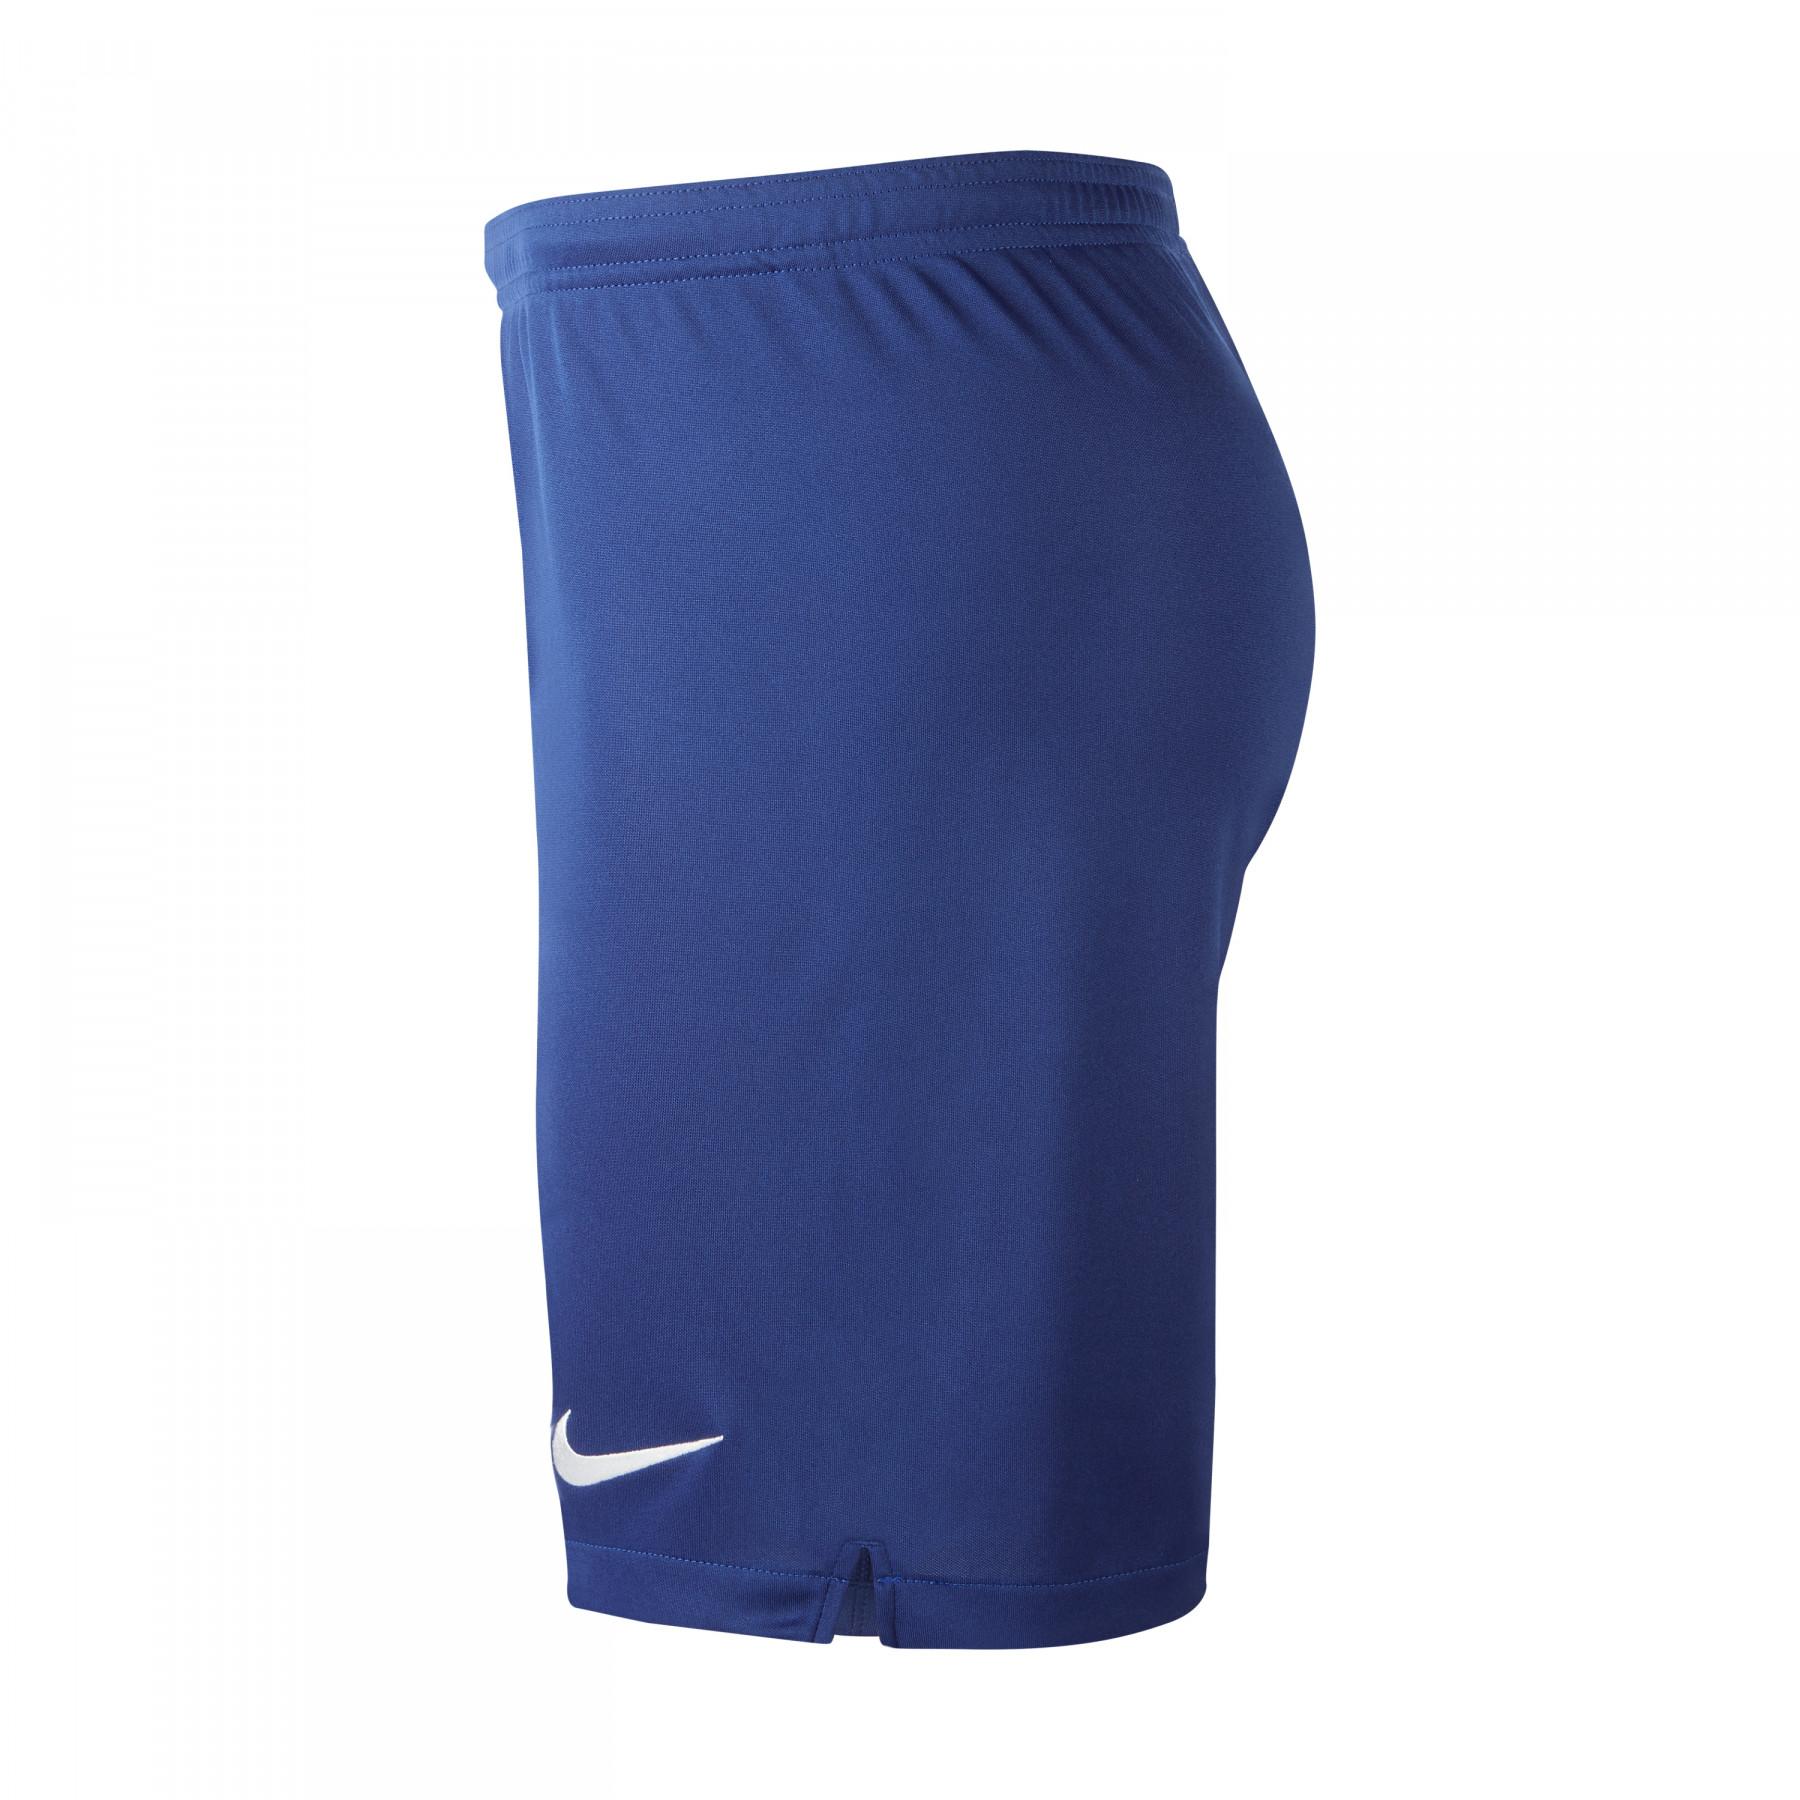 Pantalones cortos para el hogar Chelsea 2019/20